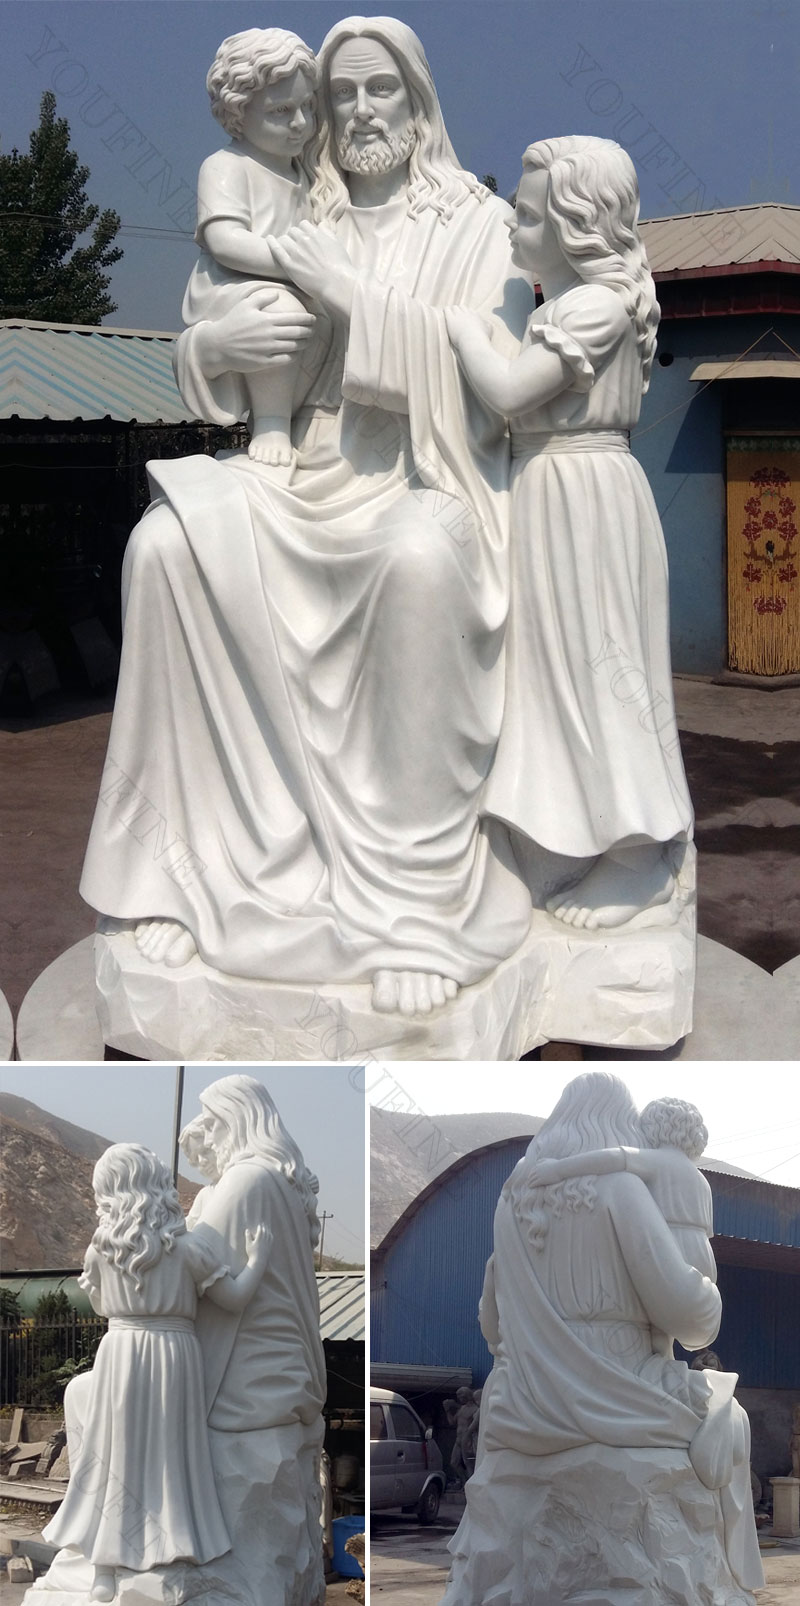 Jesus garden statues differrent angles